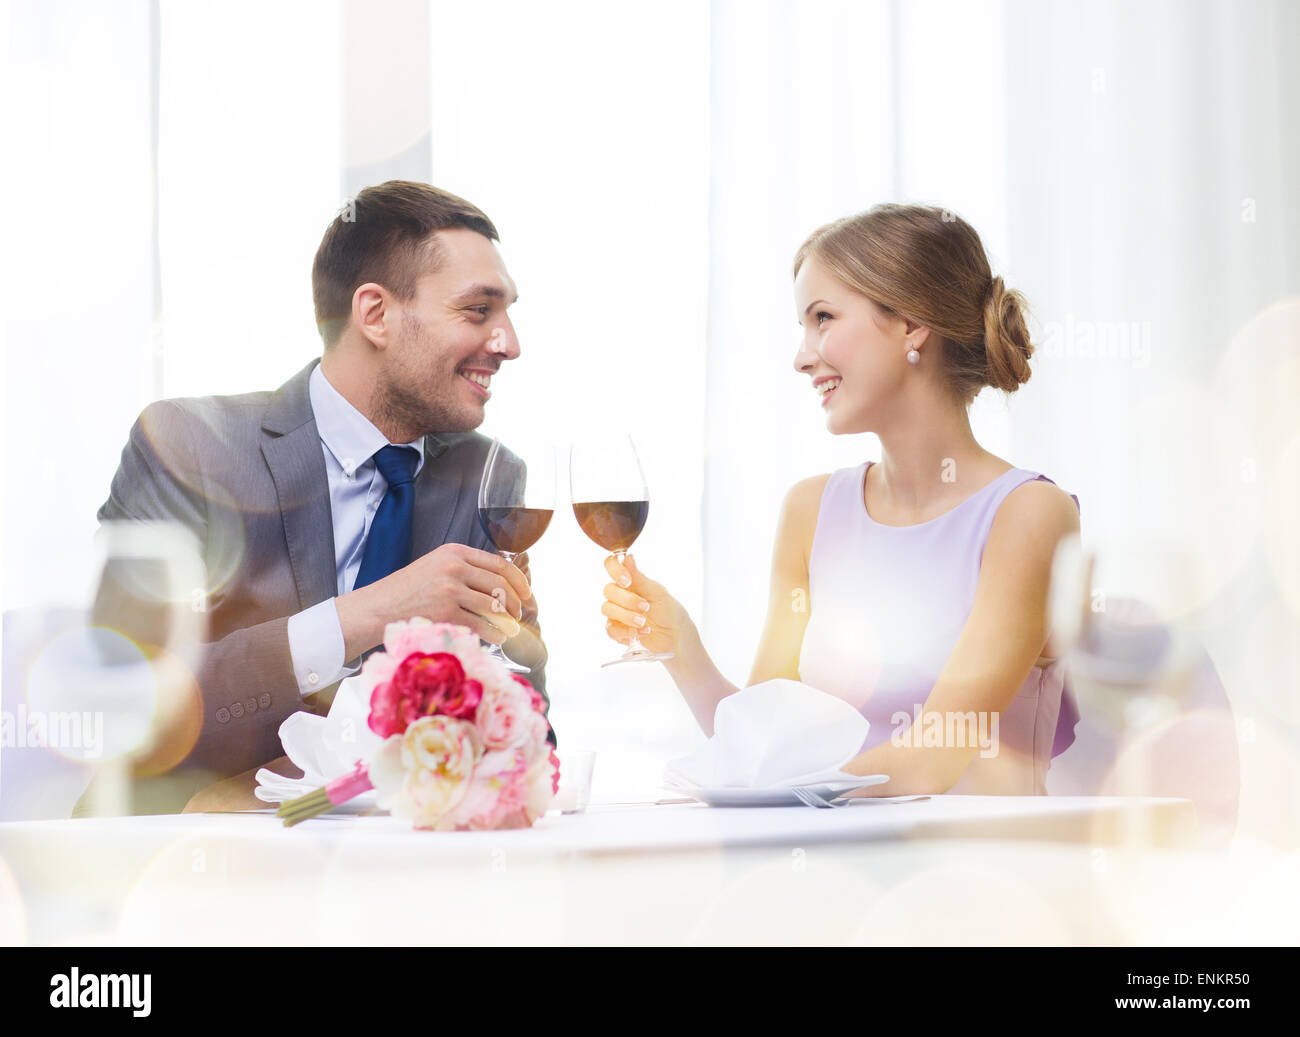 junges Paar mit Gläsern Wein im restaurant Stockfoto